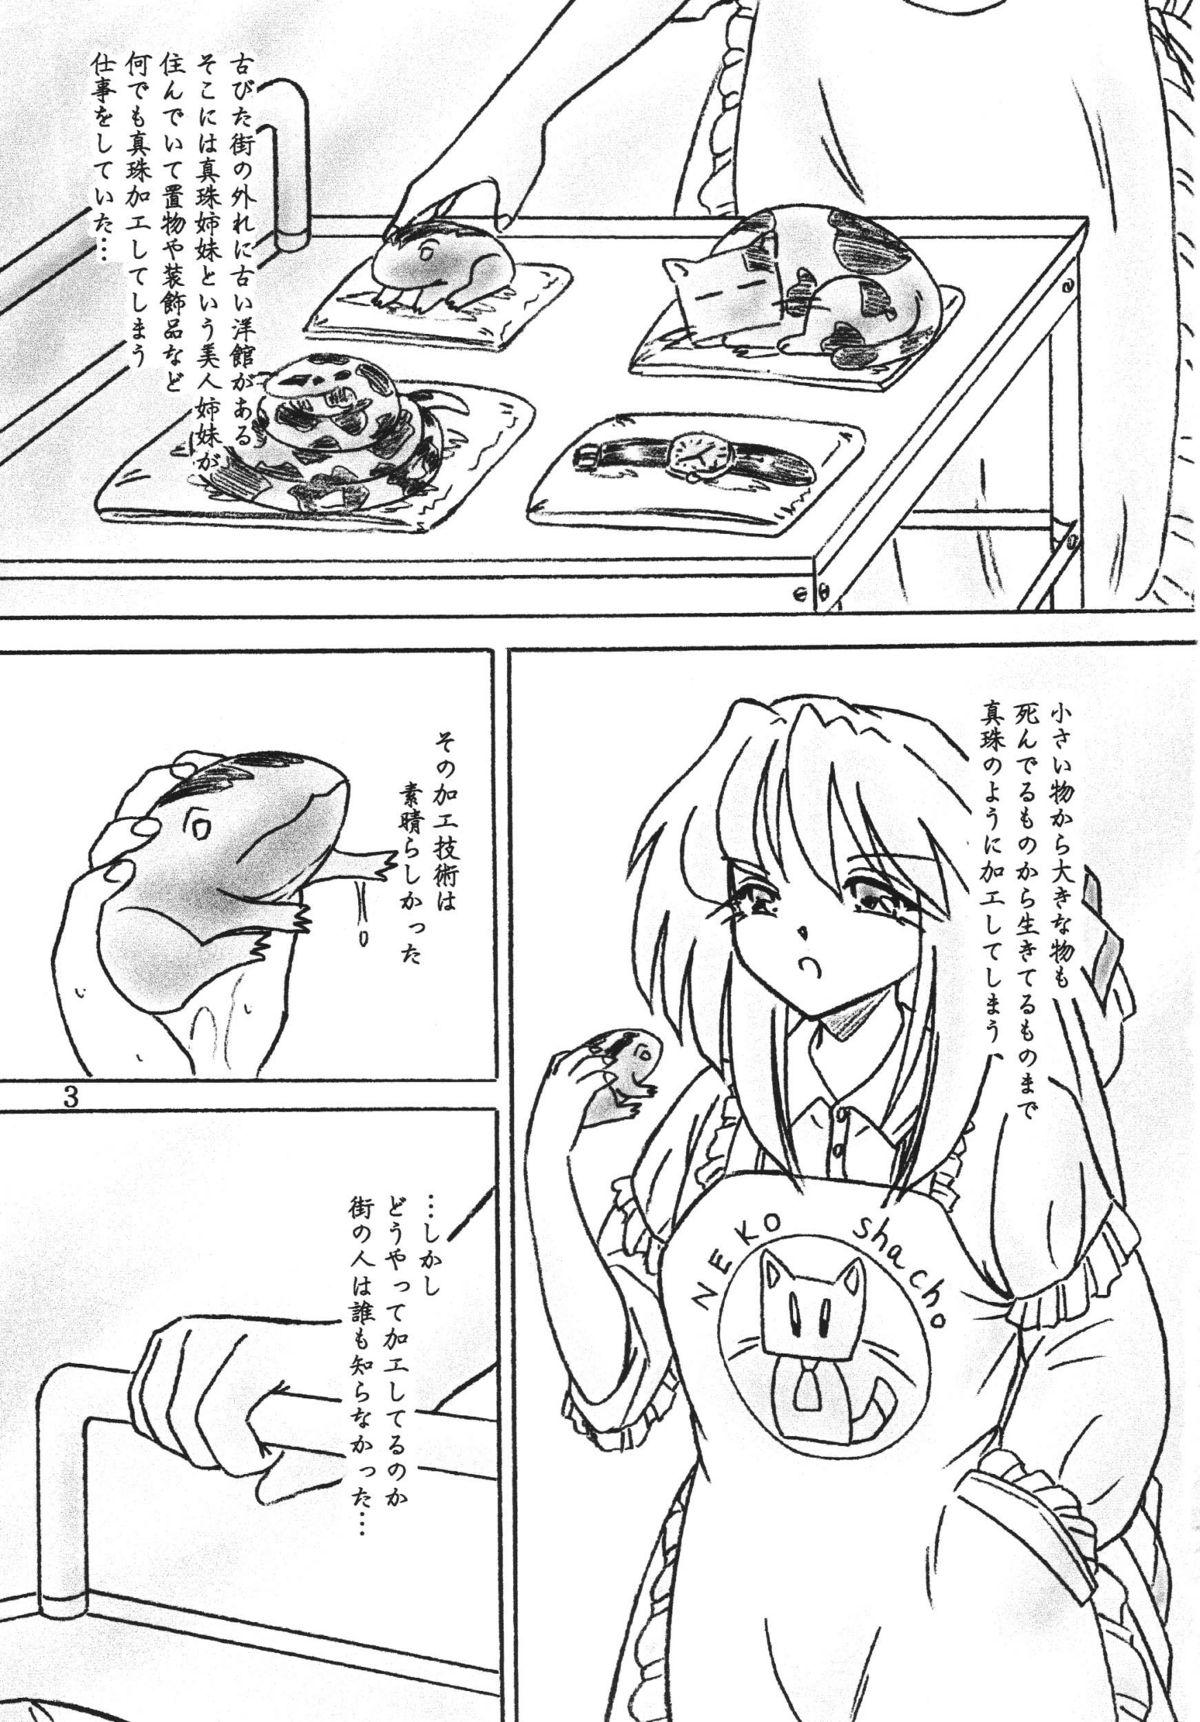 Teenager Shinju Shimai Ass Licking - Page 2